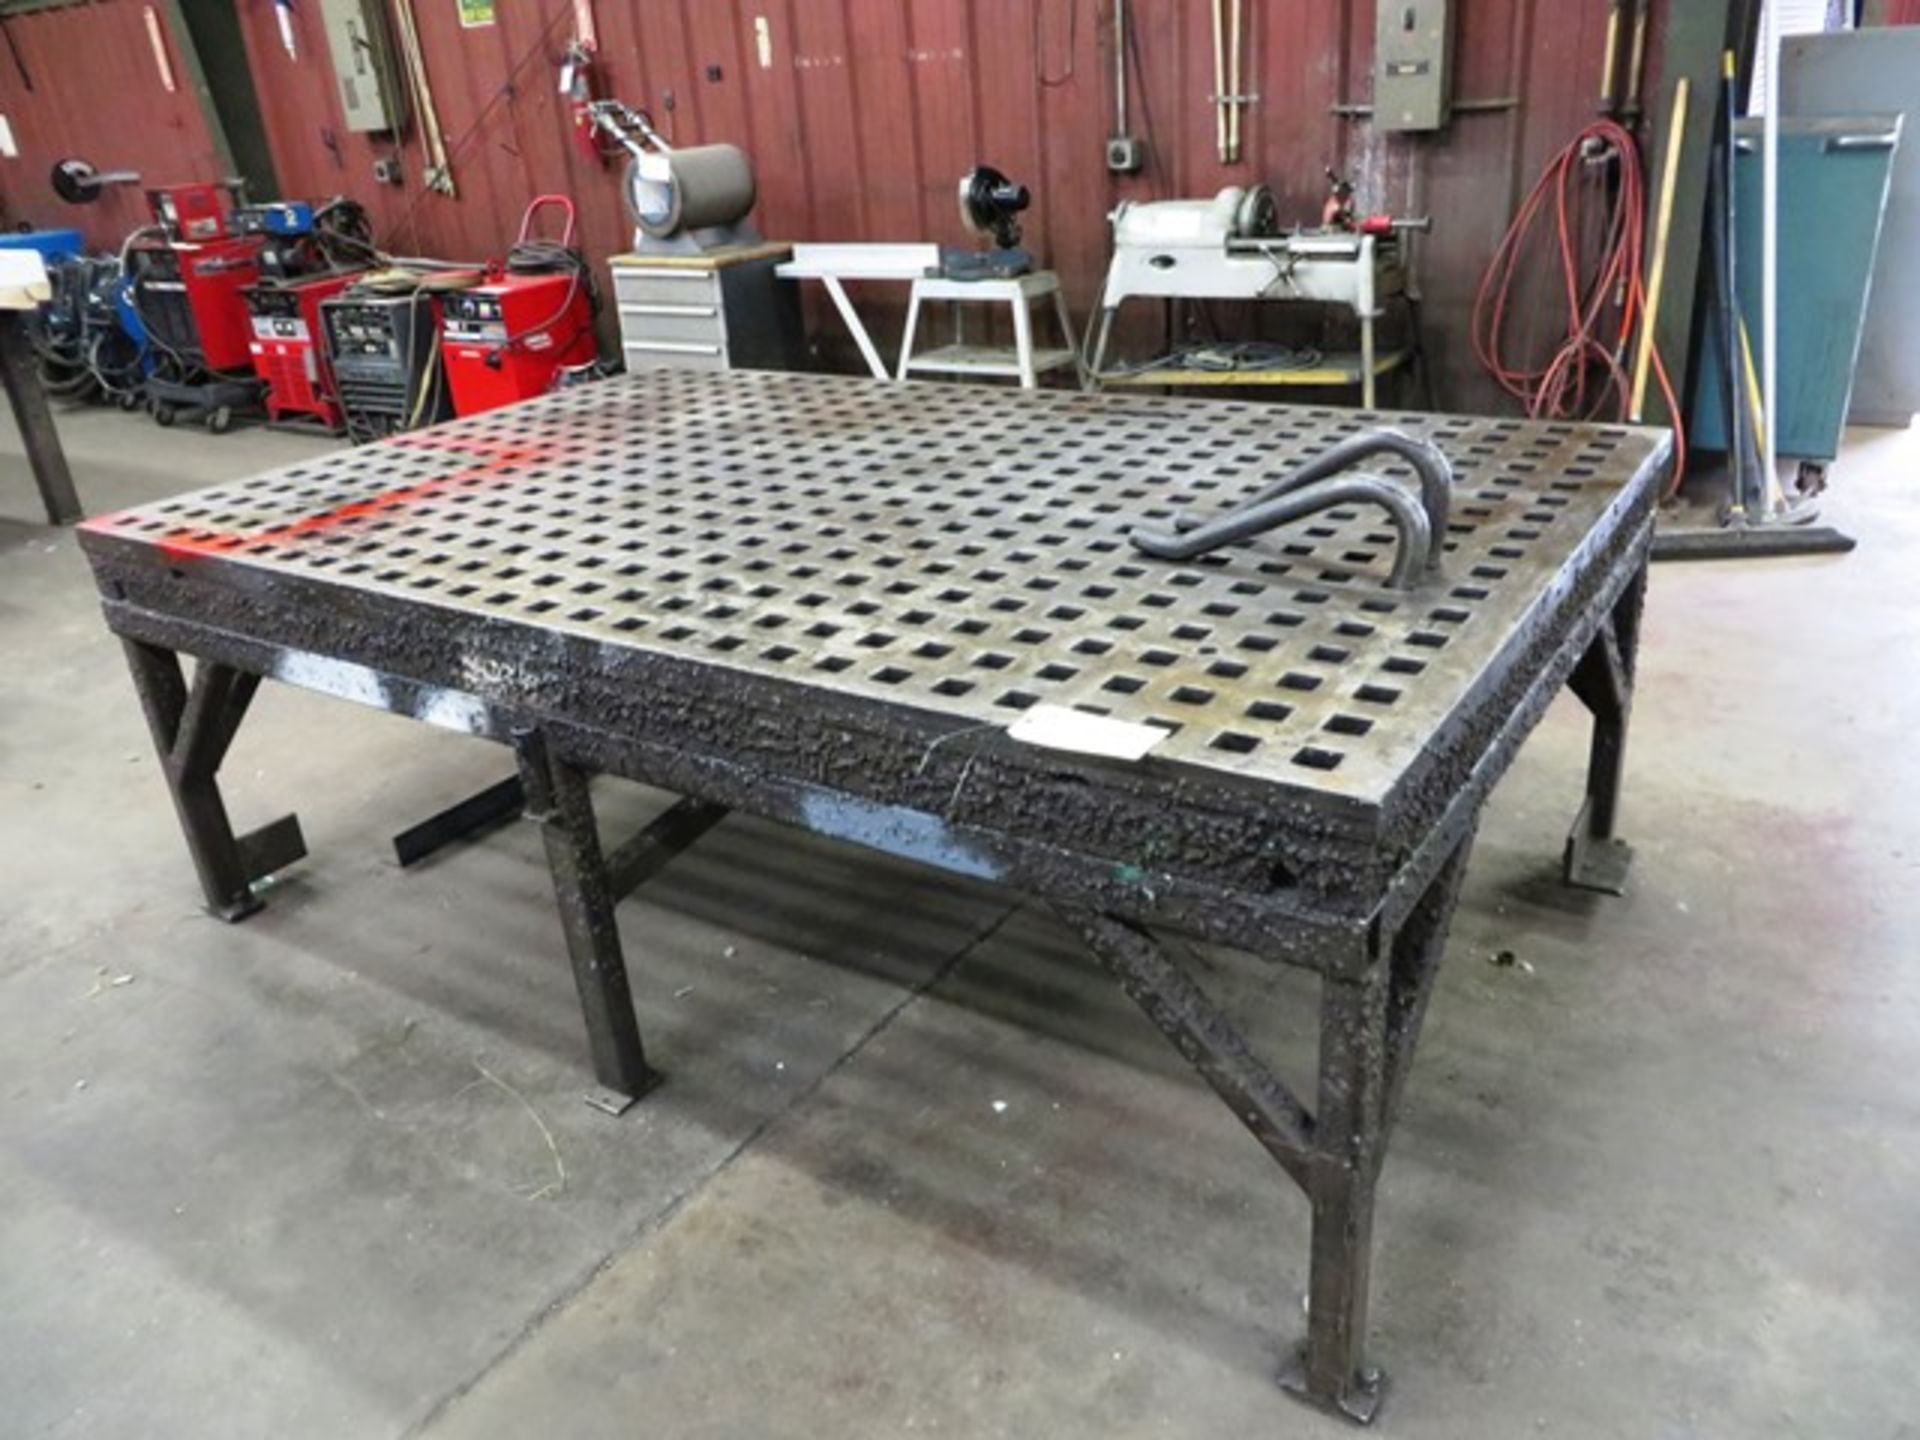 5' x 8' Acorn Type Weld Table with 1-3/4'' x 1-3/4'' Capacity